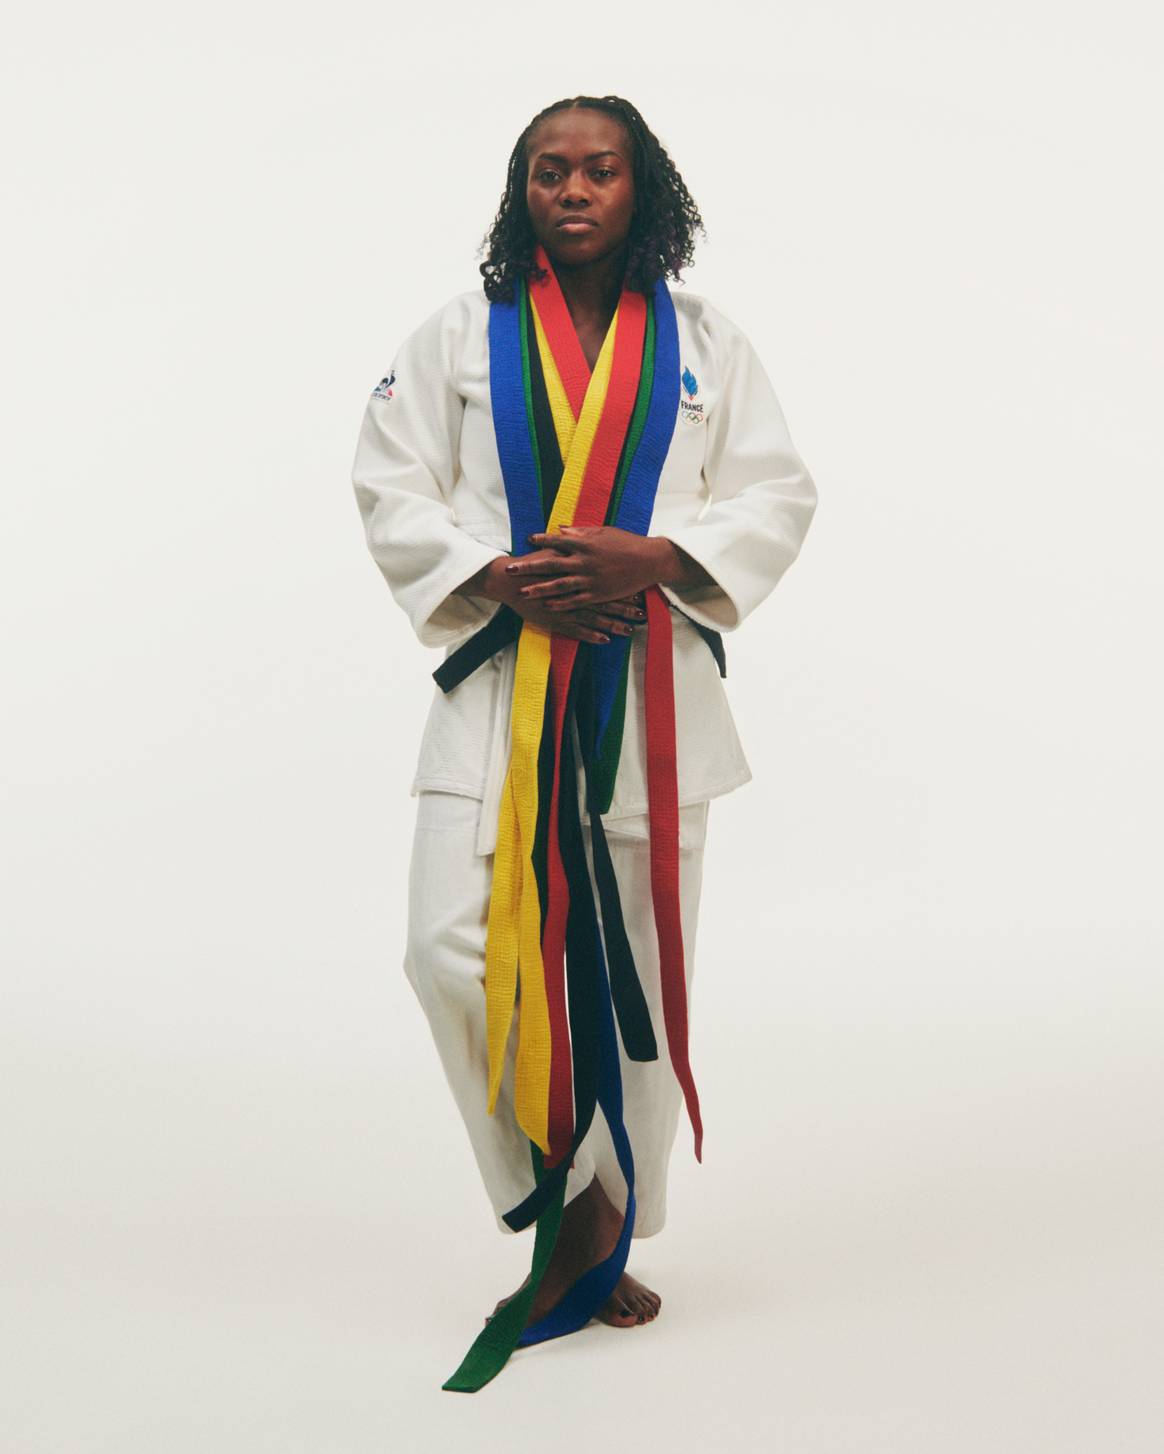 Sponsorisée par le Coq Sportif, la judokate Clarisse Agbégnénou a aidé la marque à concevoir un kimono spécial pour les JO